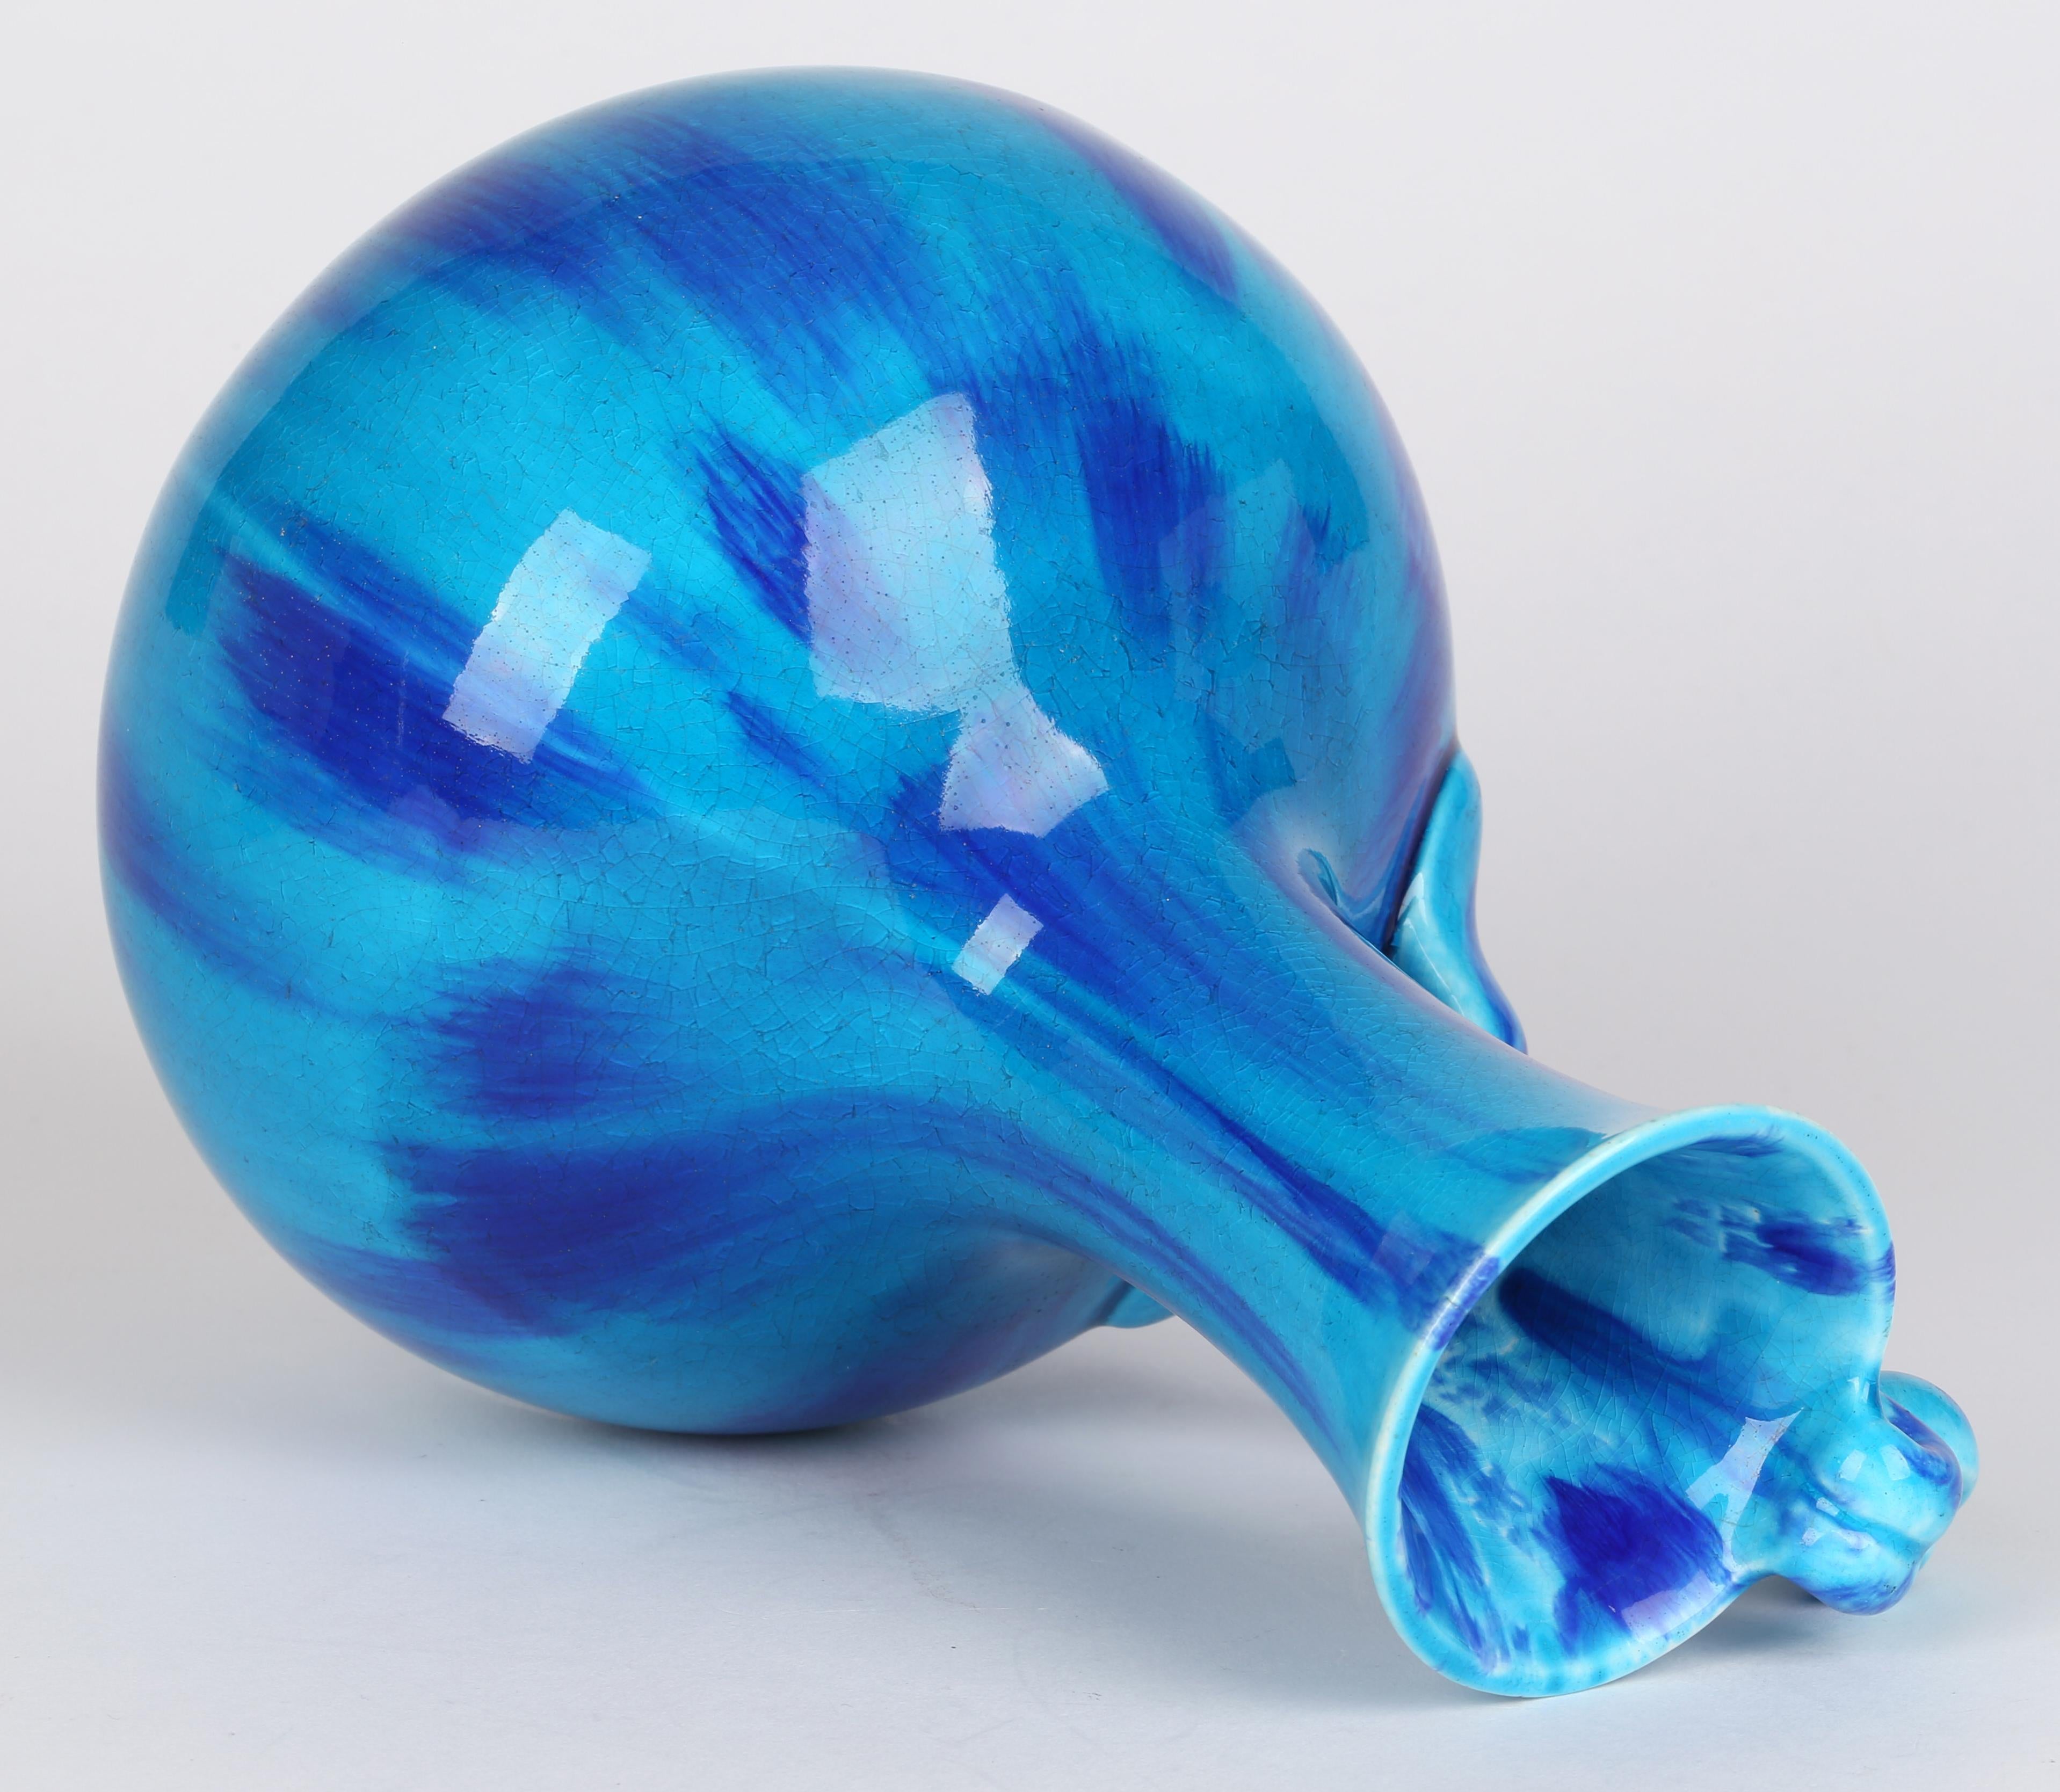 Minton Aesthetic Movement Blue & Turquoise Glazed Handled Art Pottery Vase 6